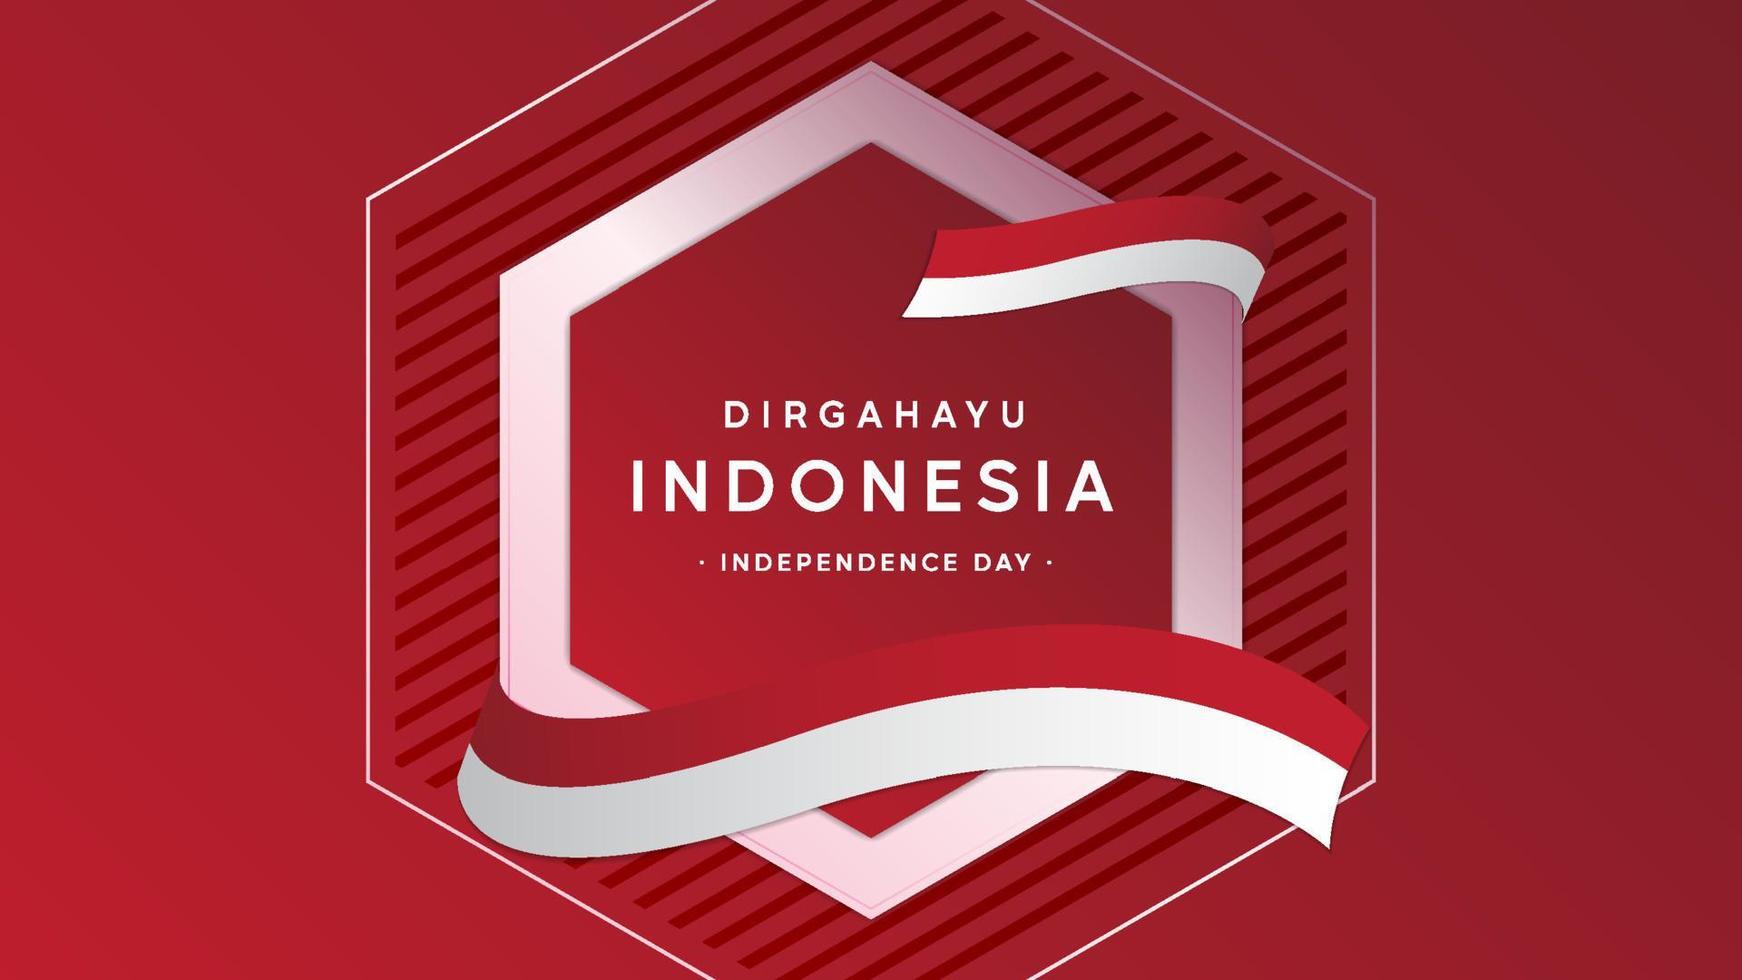 ontwerp van de achtergrond van de onafhankelijkheidsdag van Indonesië vector